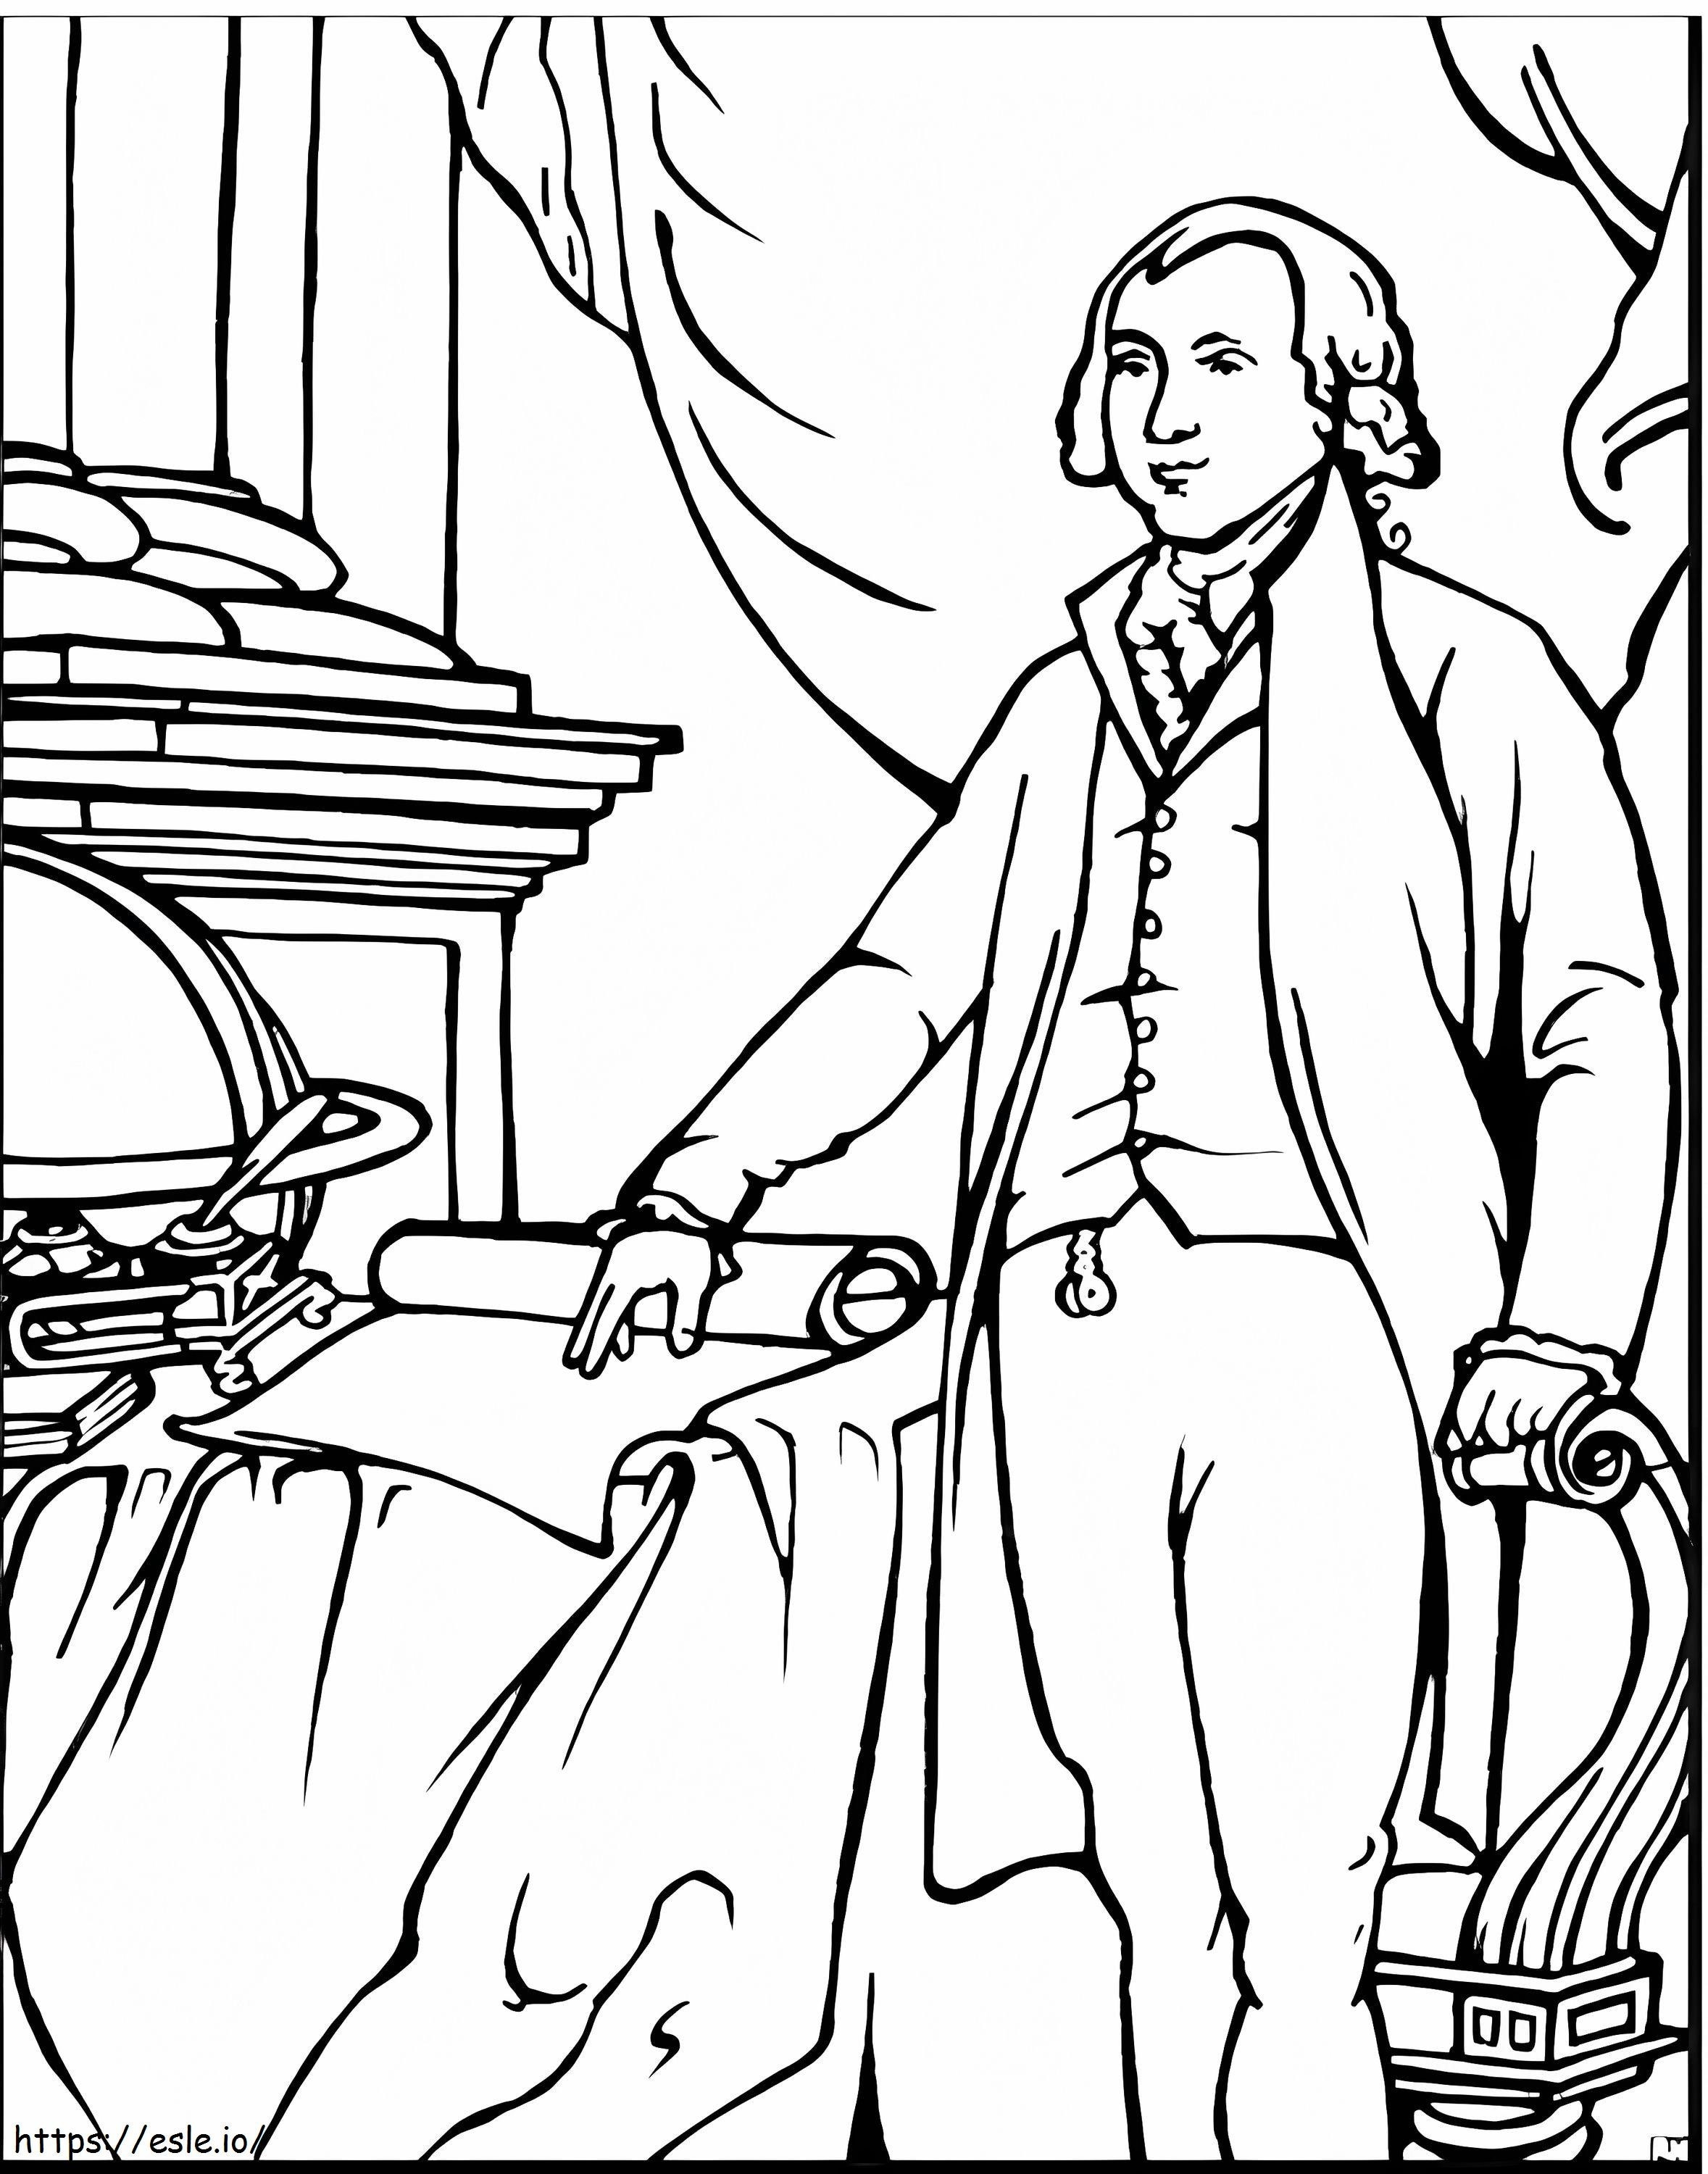 James Madison de colorat